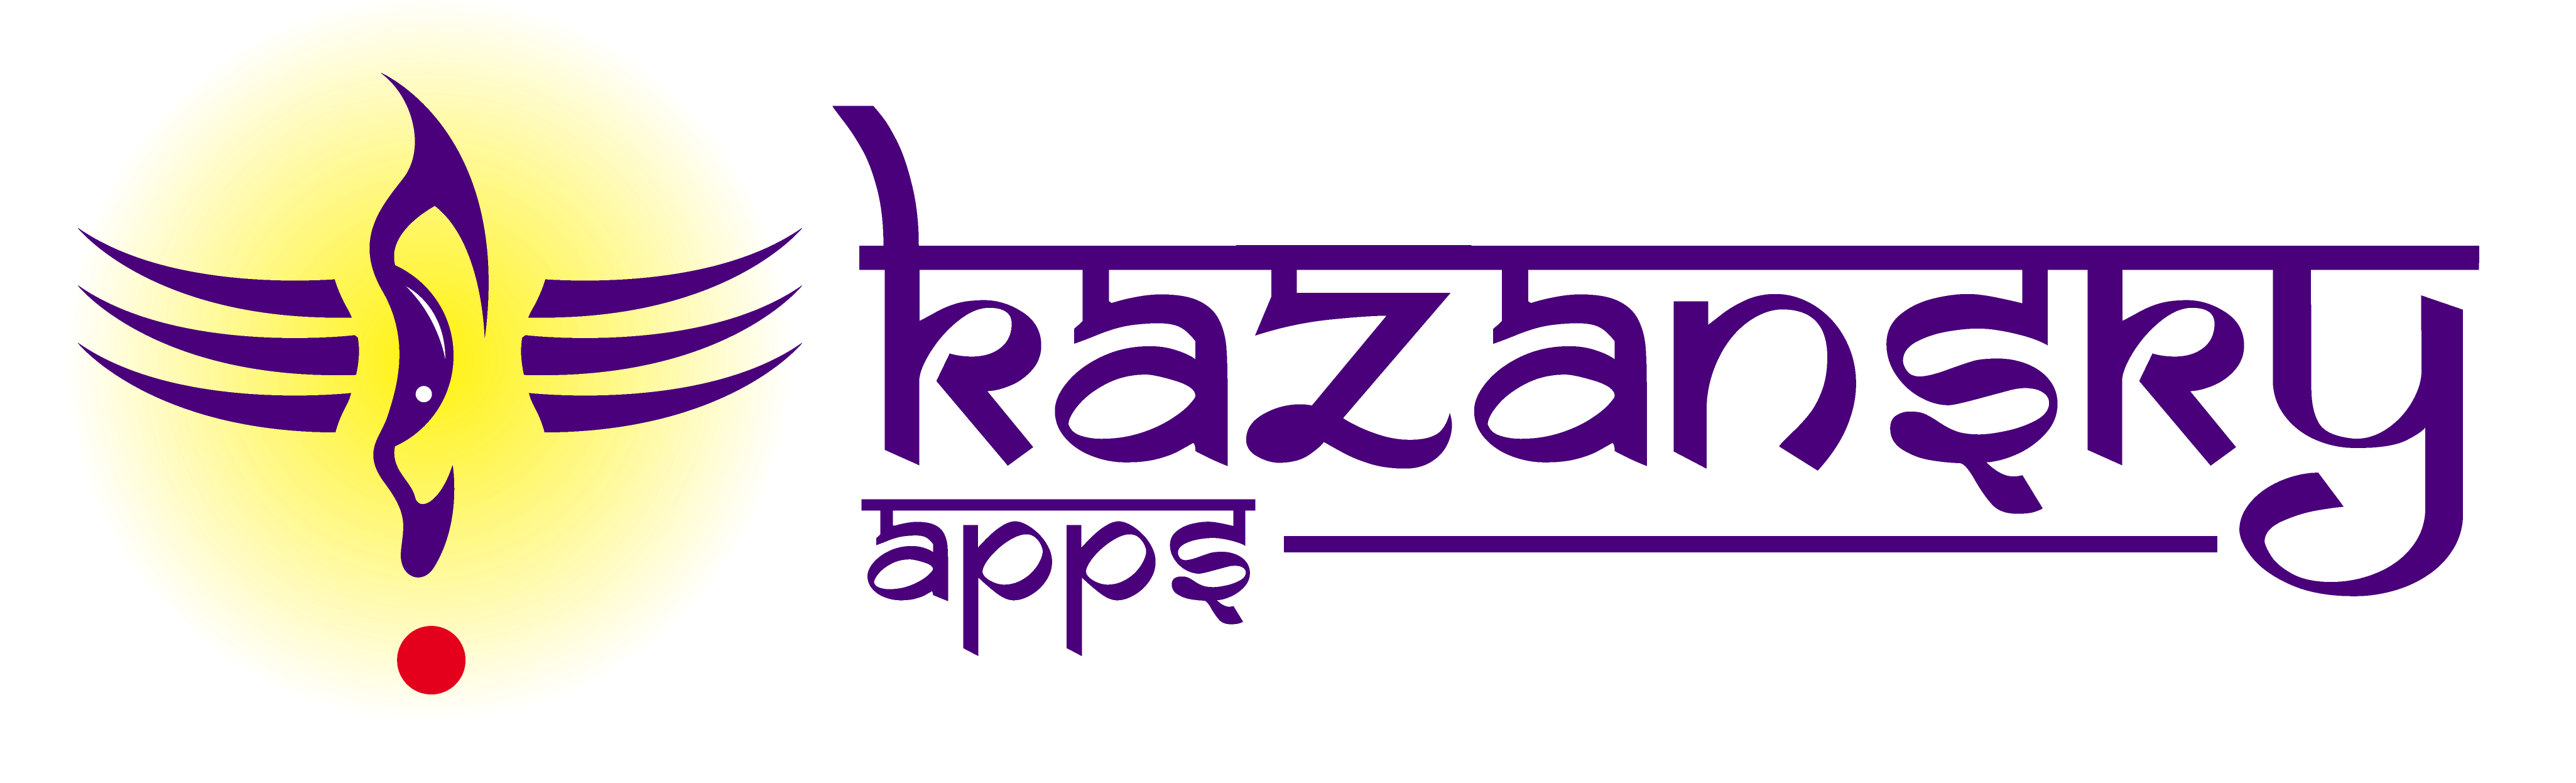 Kazansky Apps